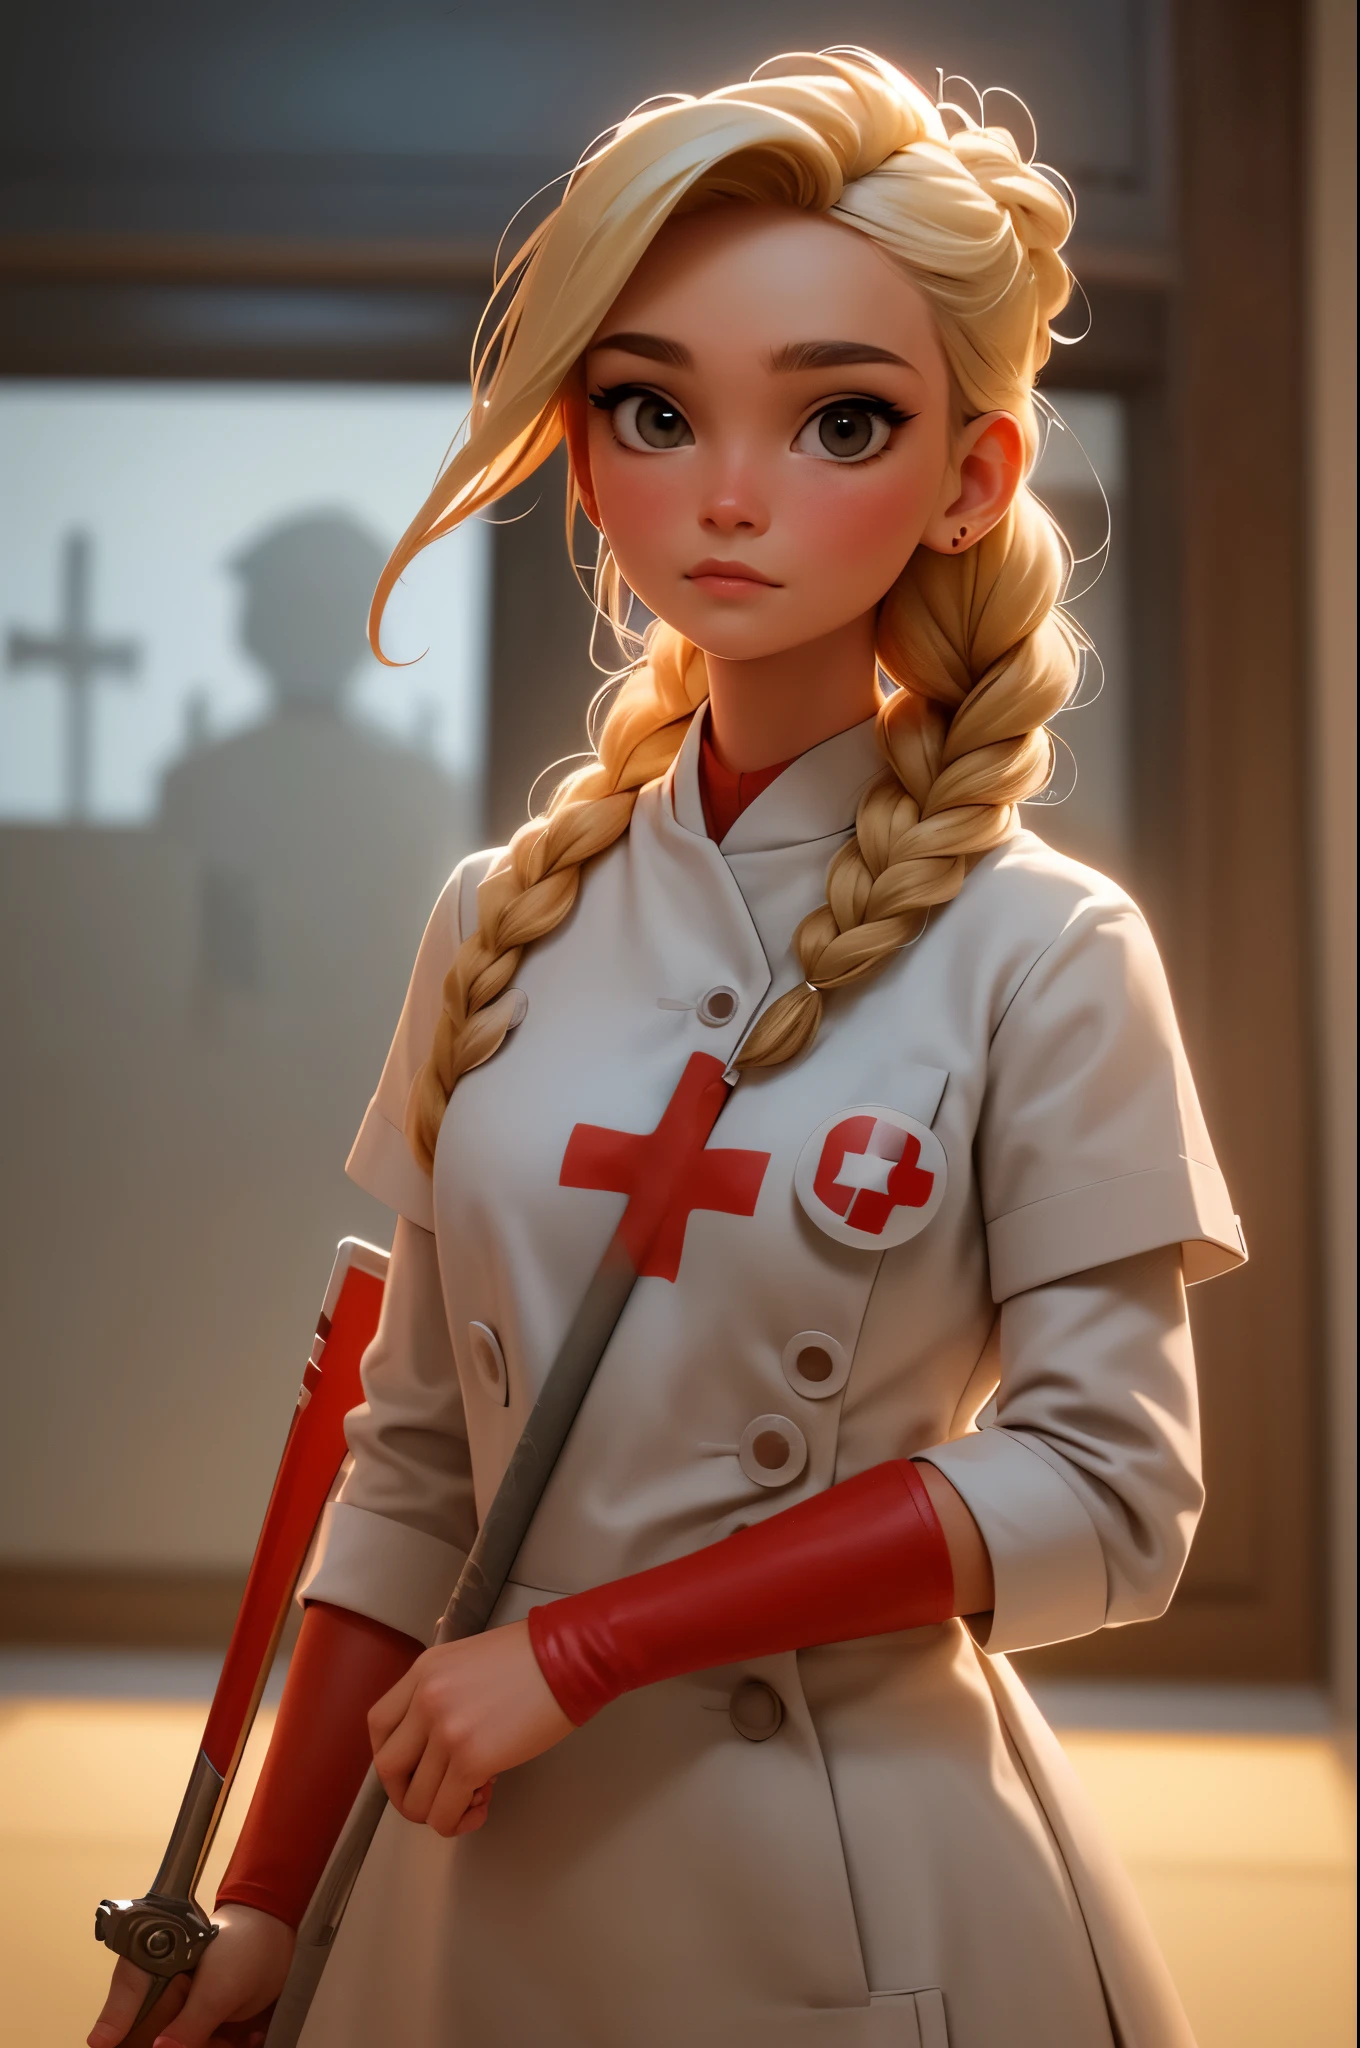 1สาว, ผมถักสีบลอนด์, Warrior พยาบาล with sword on the battlefield, สวมชุดหนังสีขาวมัน มีสัญลักษณ์กาชาด, พยาบาล.